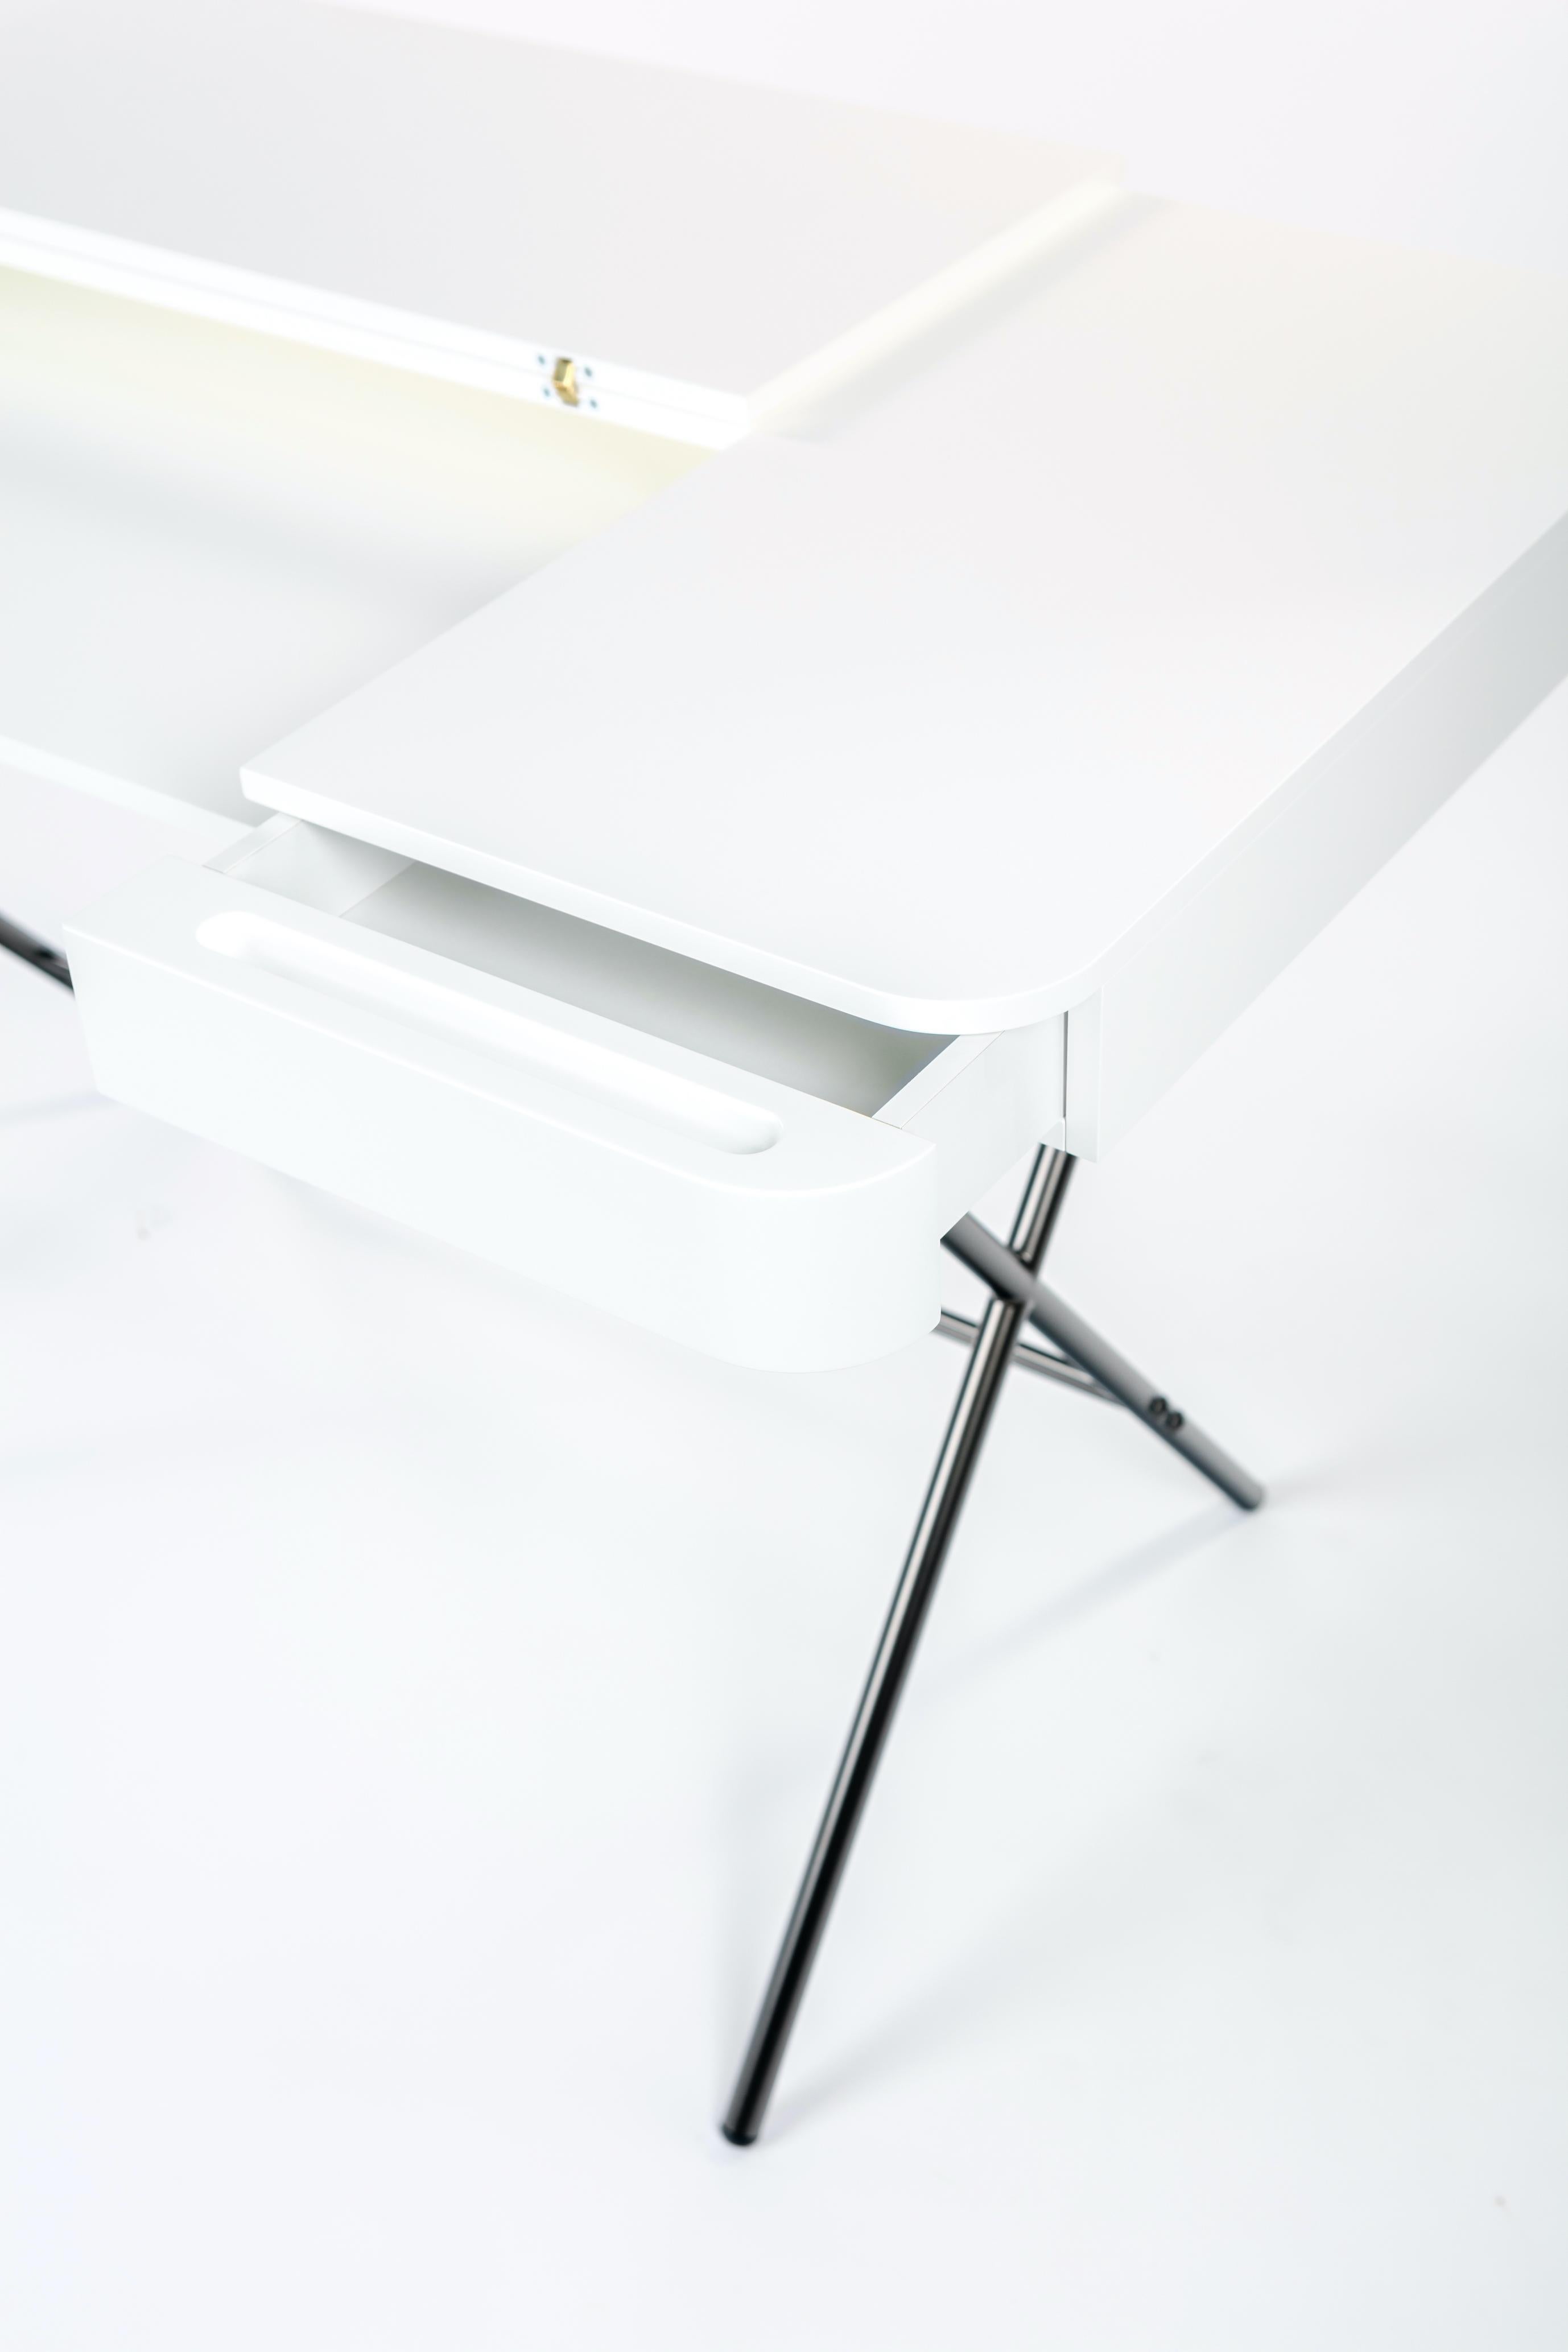 Contemporary Adentro Cosimo Desk design Marco Zanuso jr White Matt  top & bronze base.  For Sale